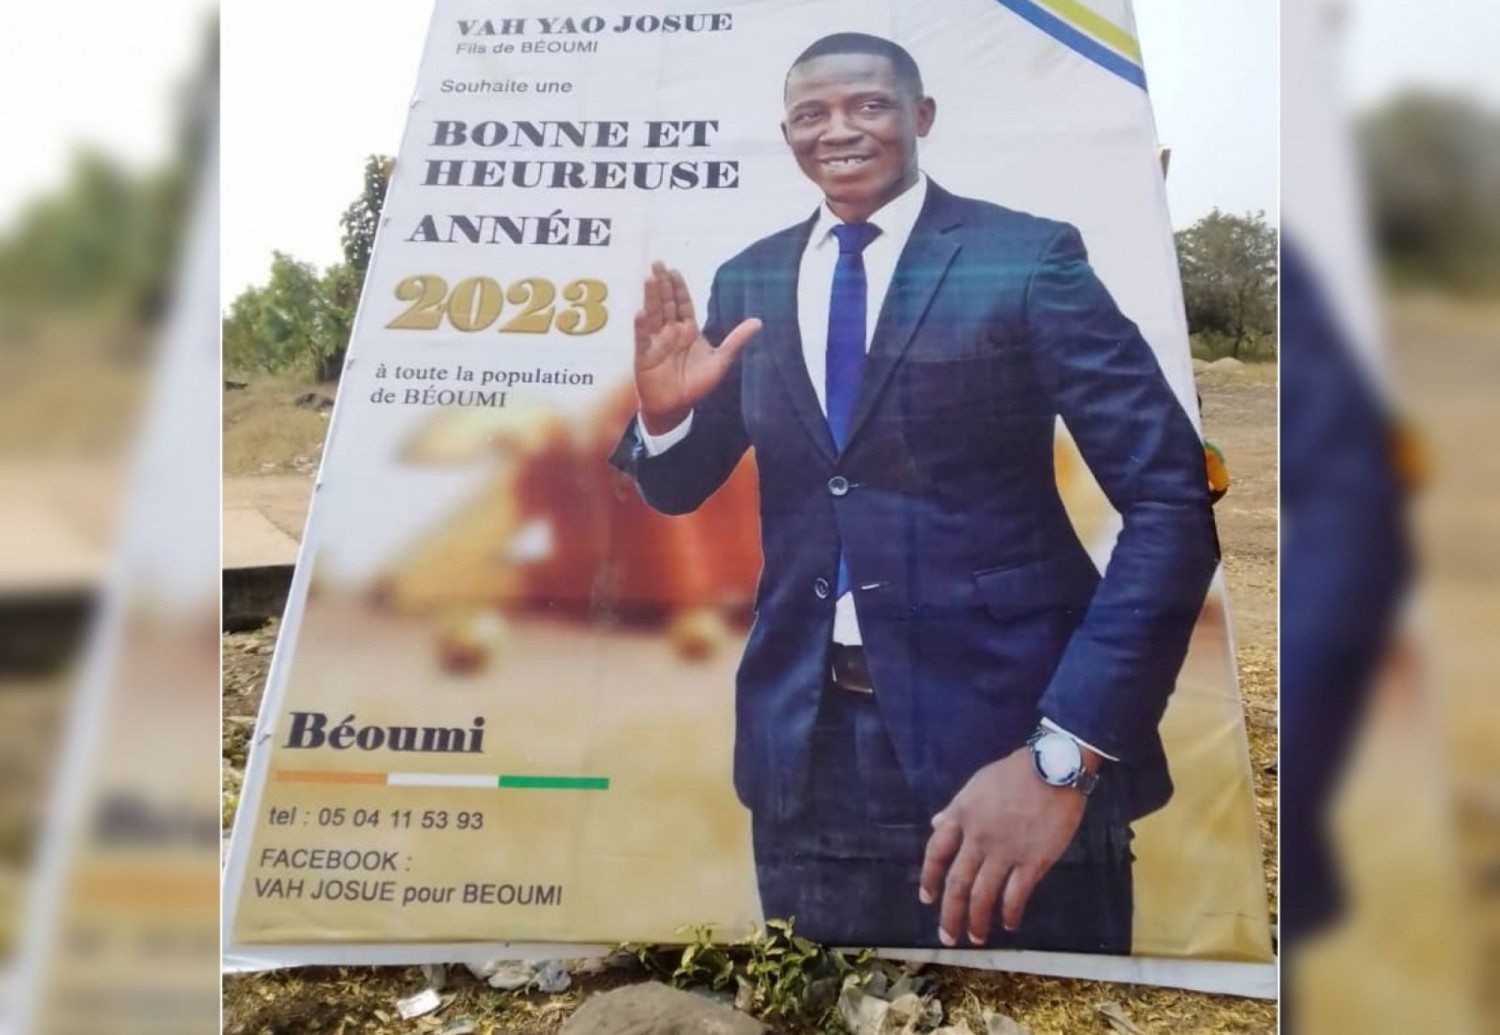 Côte d'Ivoire : Béoumi, il paie 250 000 f à la mairie pour poser des panneaux d'affichage et est empêché par la municipalité de les installer